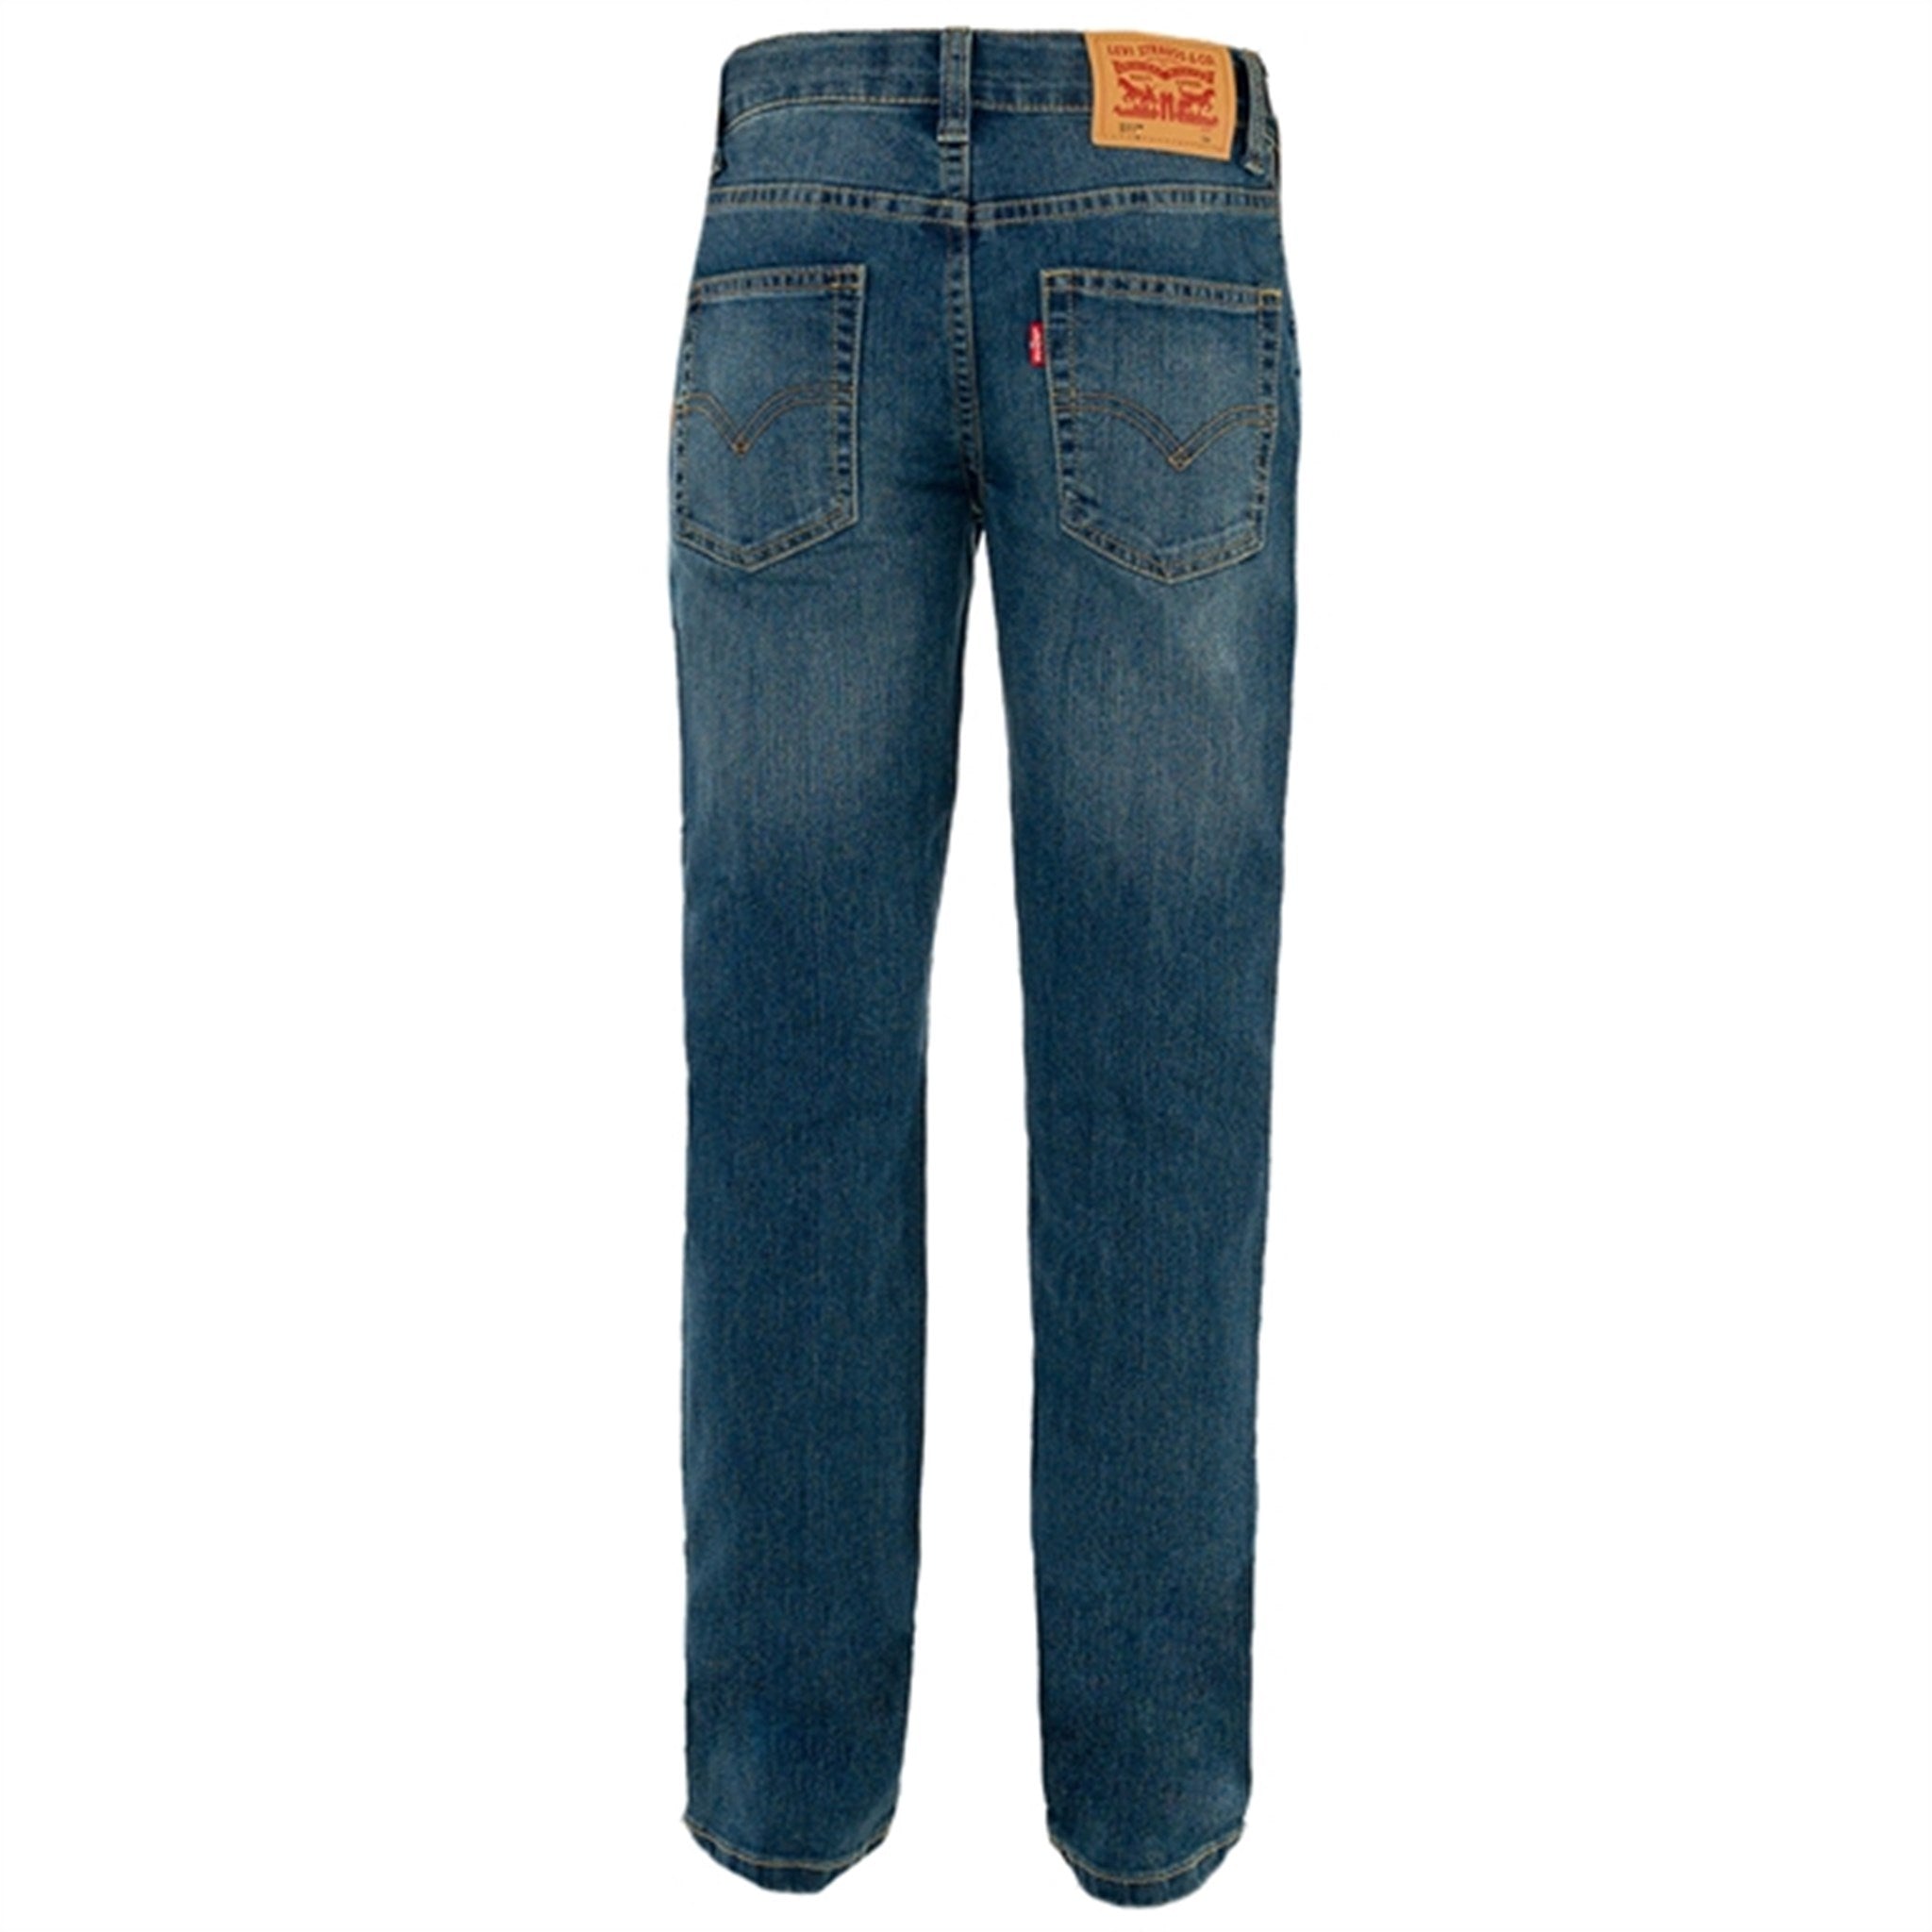 Levi's 511 Slim Fit Jeans Yucatan